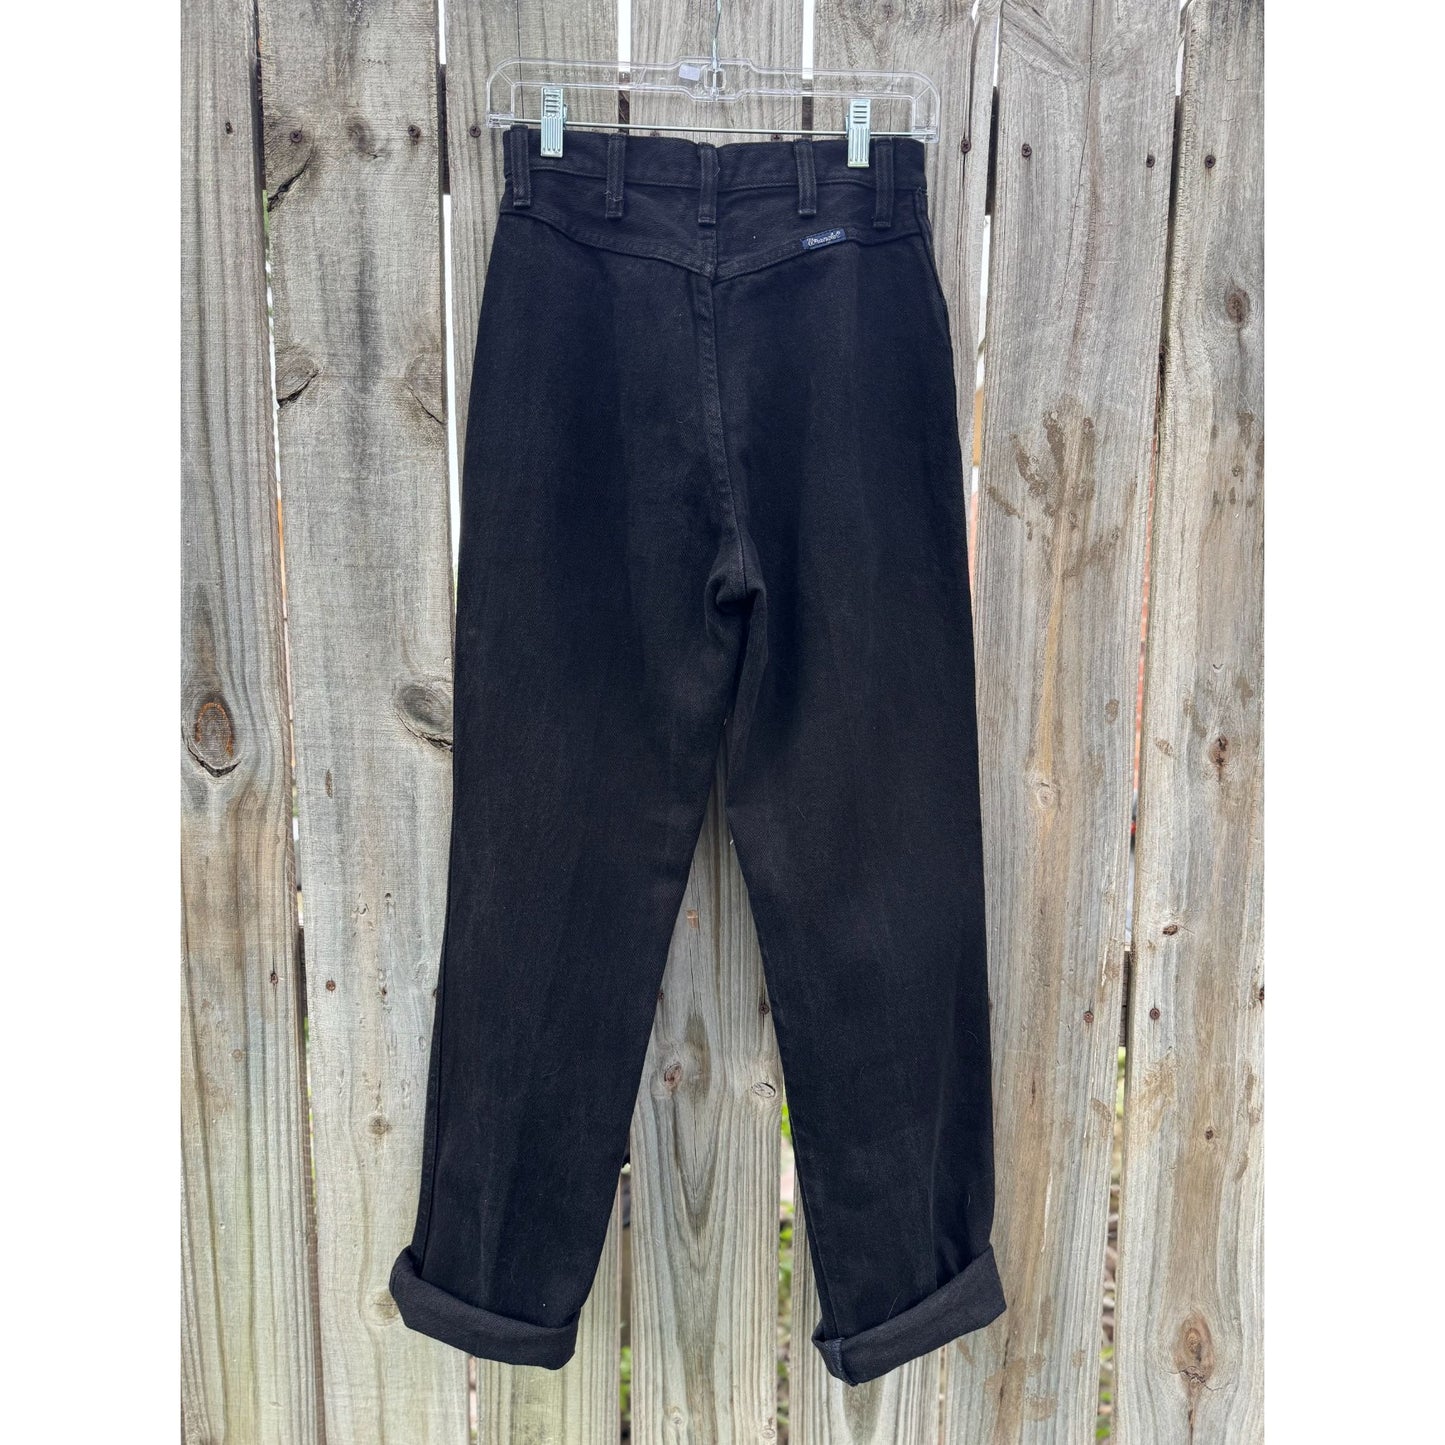 80's Wrangler Black Ultra High Rise Denim Jeans 7/8